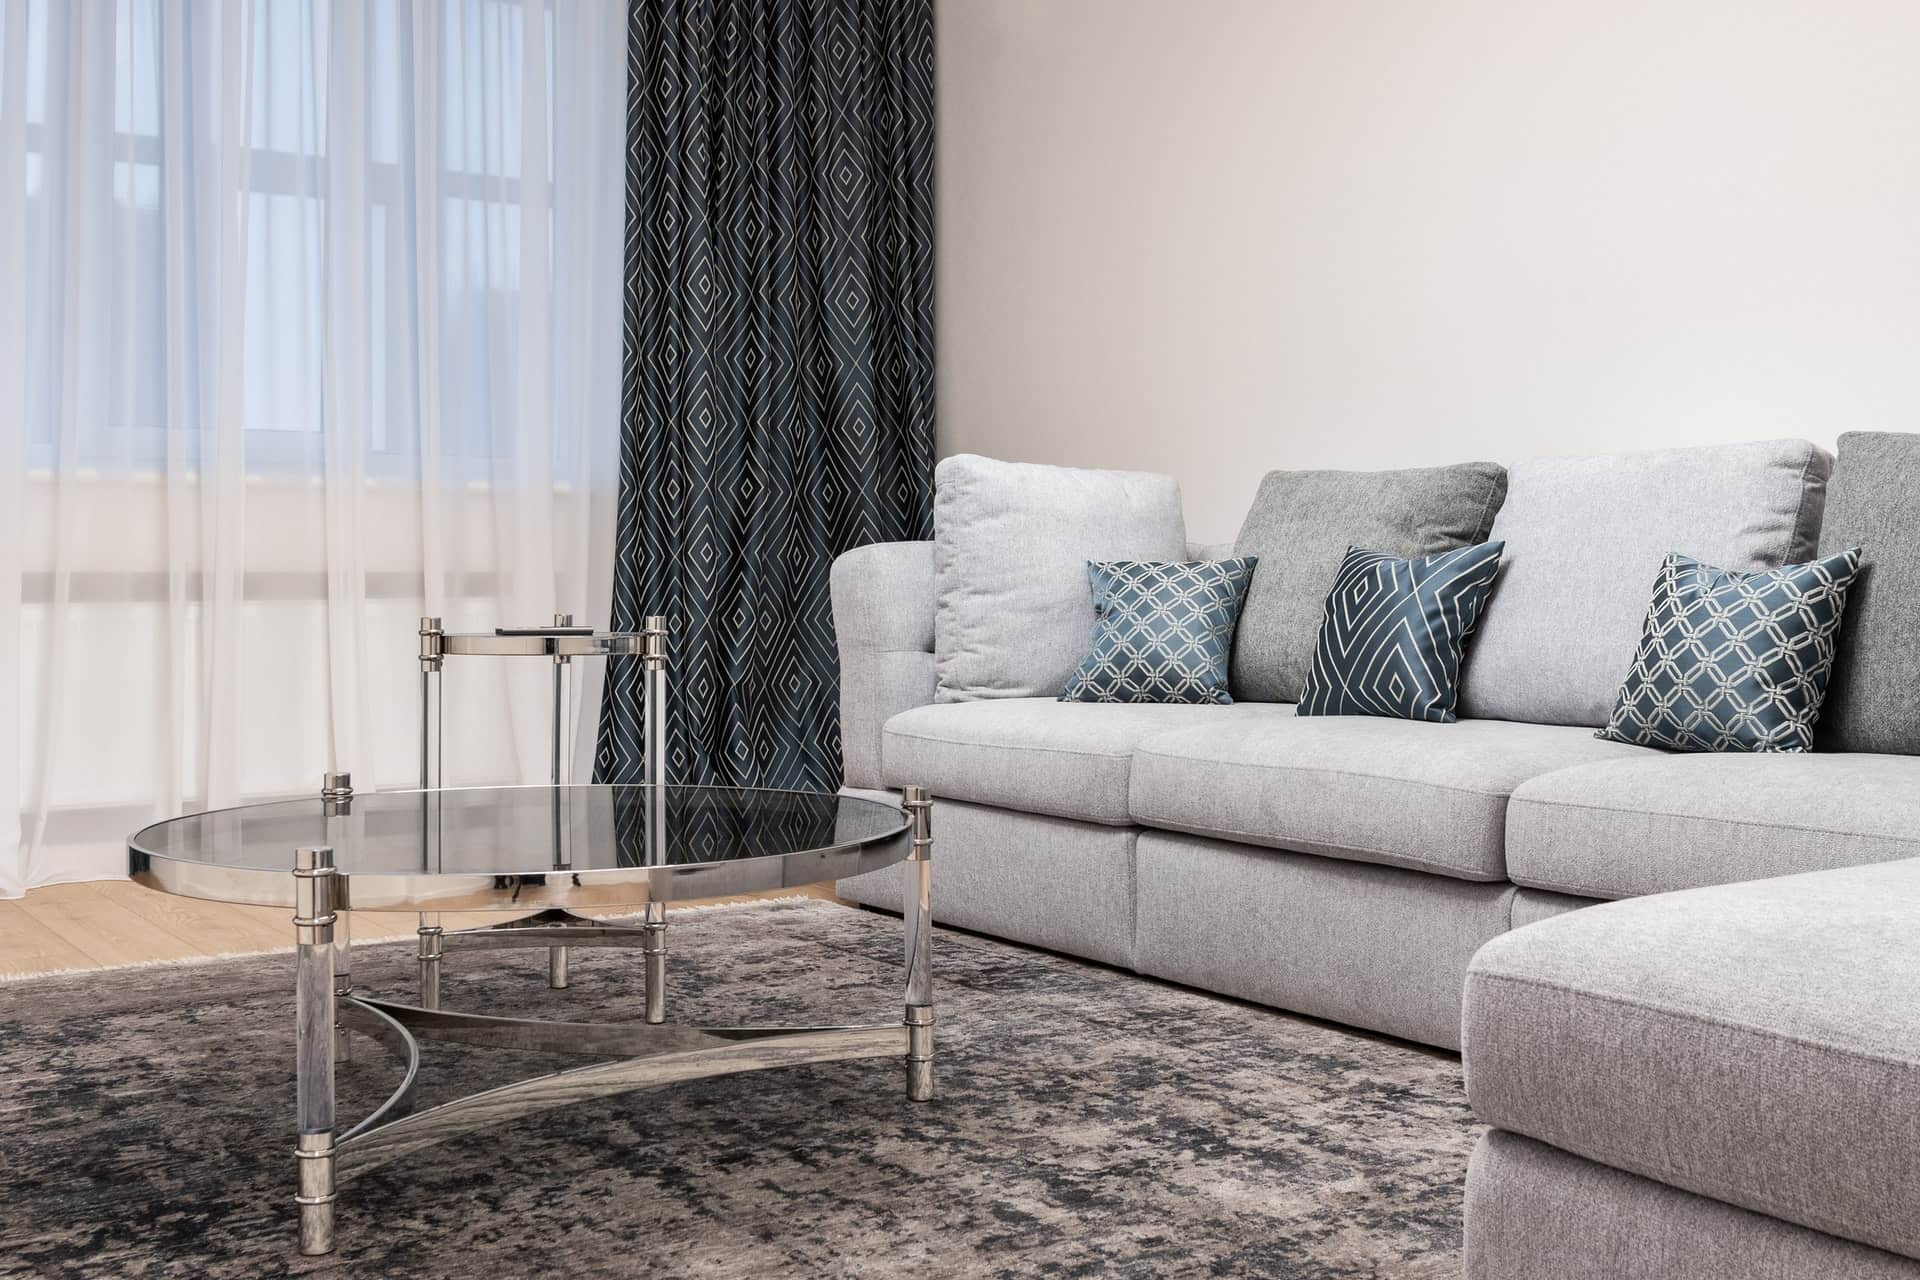 Come scegliere il divano giusto per la tua casa, alla scoperta di design,  colori e tessuti più apprezzati del momento - Il Blog di Kopen